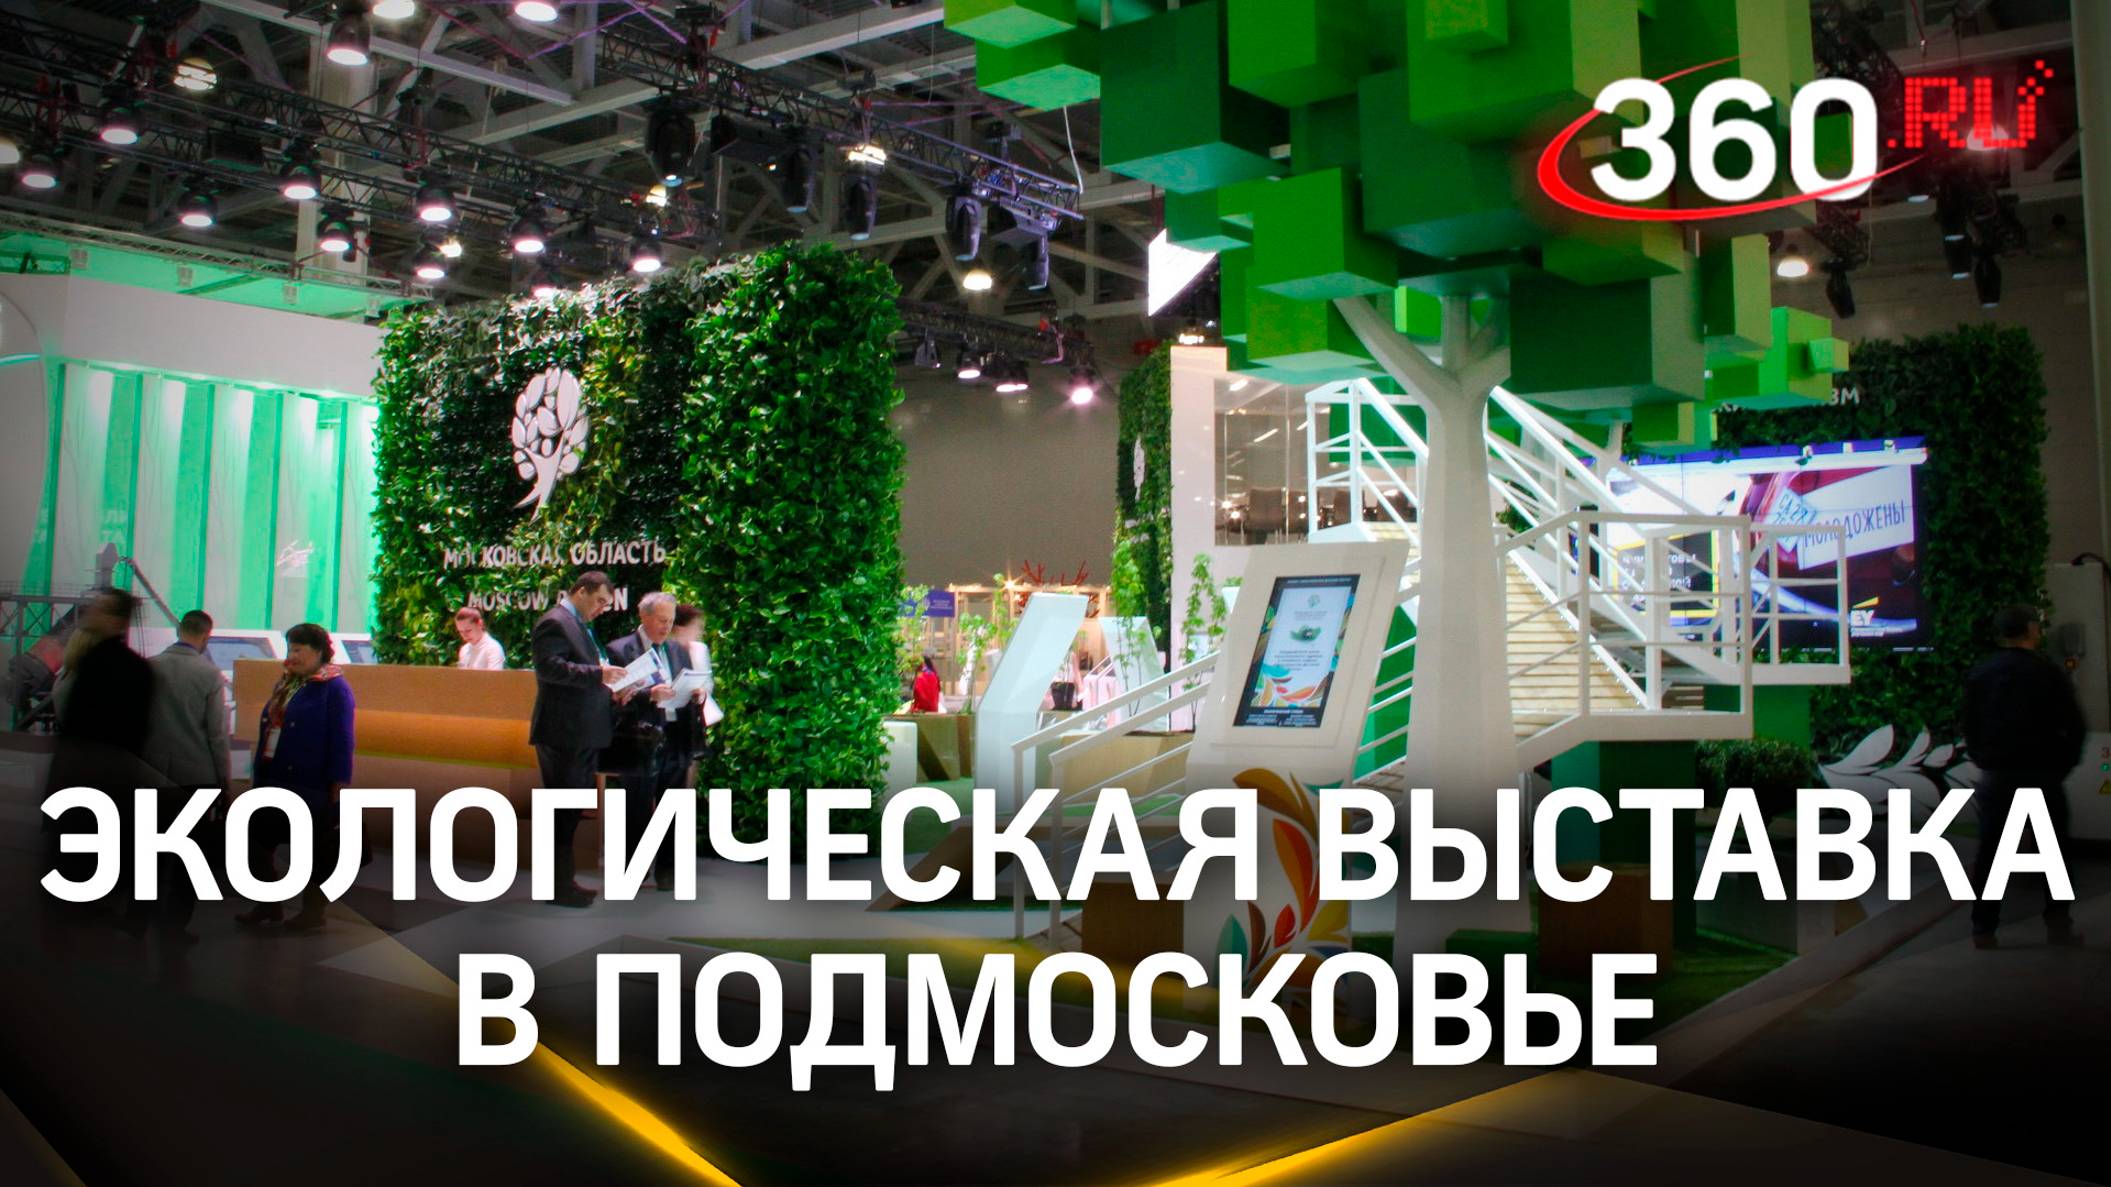 В Подмосковье прошла экологическая выставка, посвященная раздельному сбору мусора. Лилия Белова